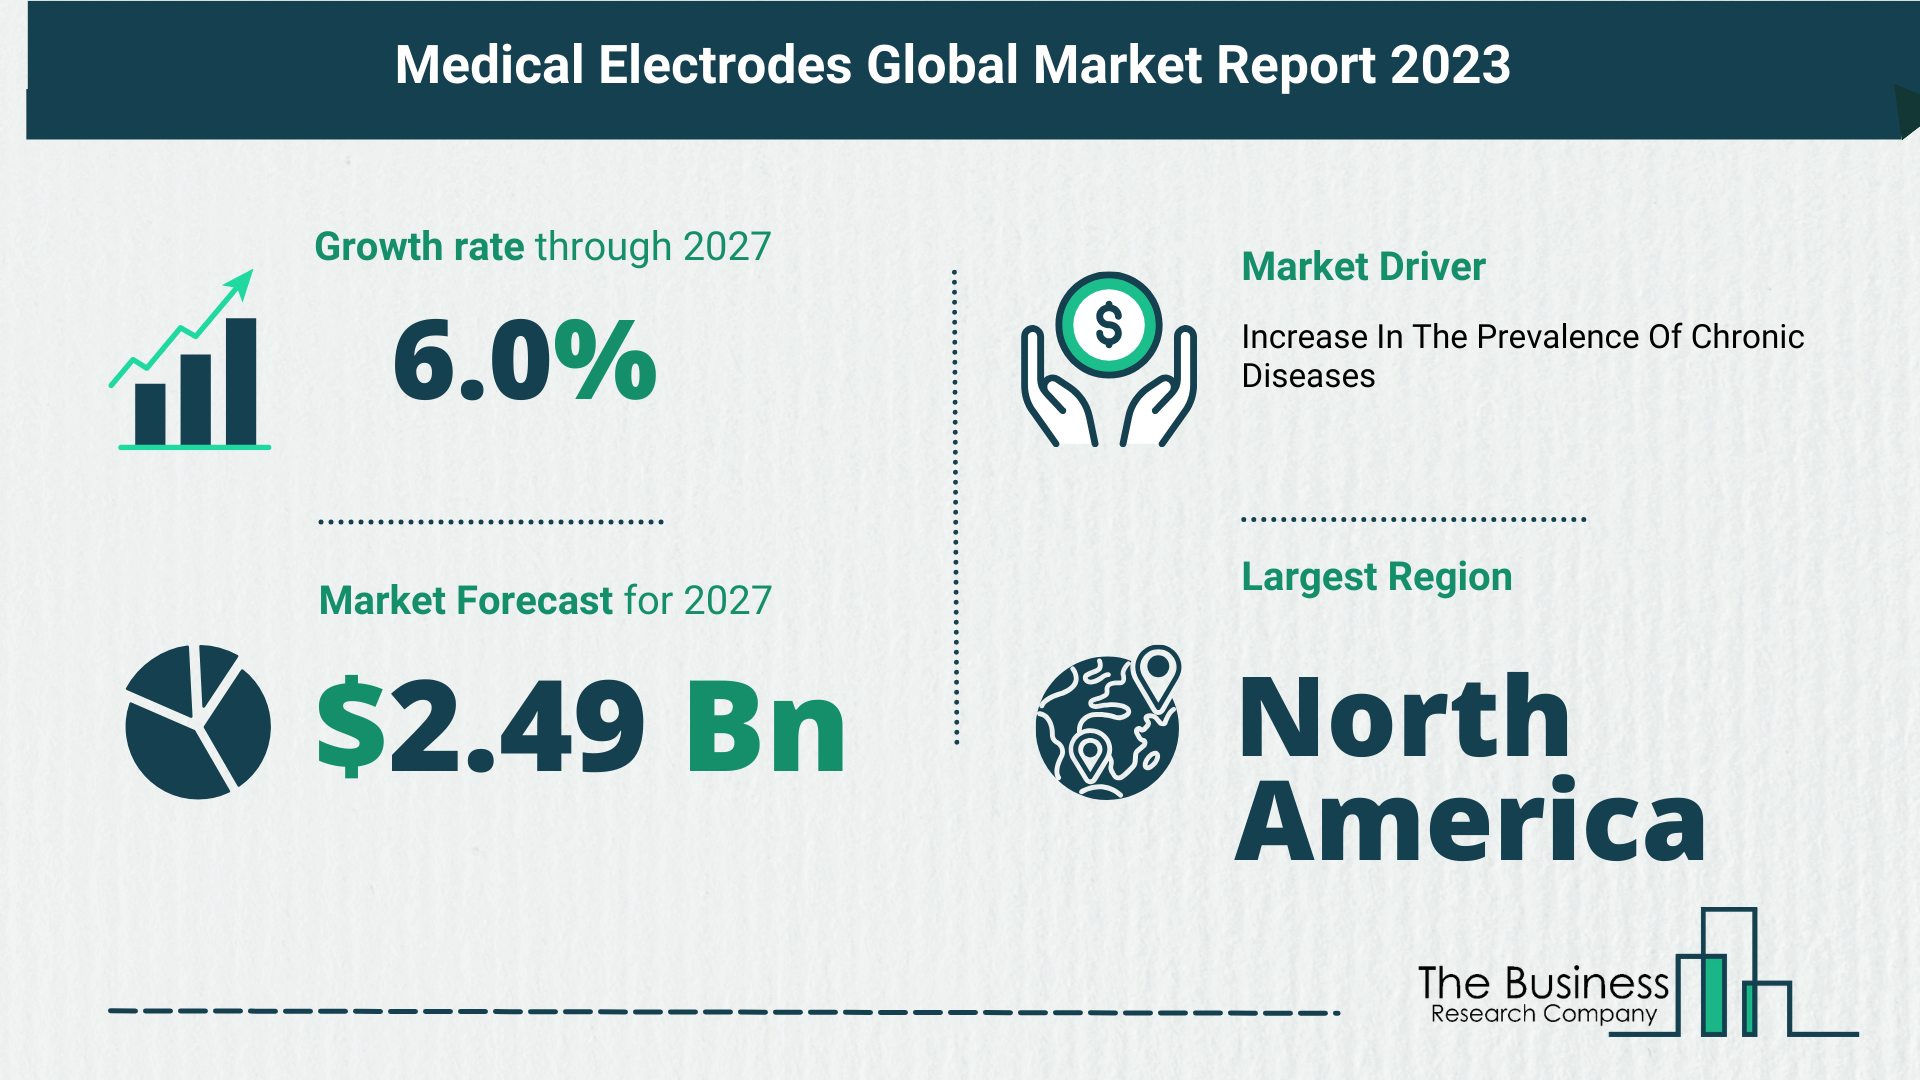 Global Medical Electrodes Market